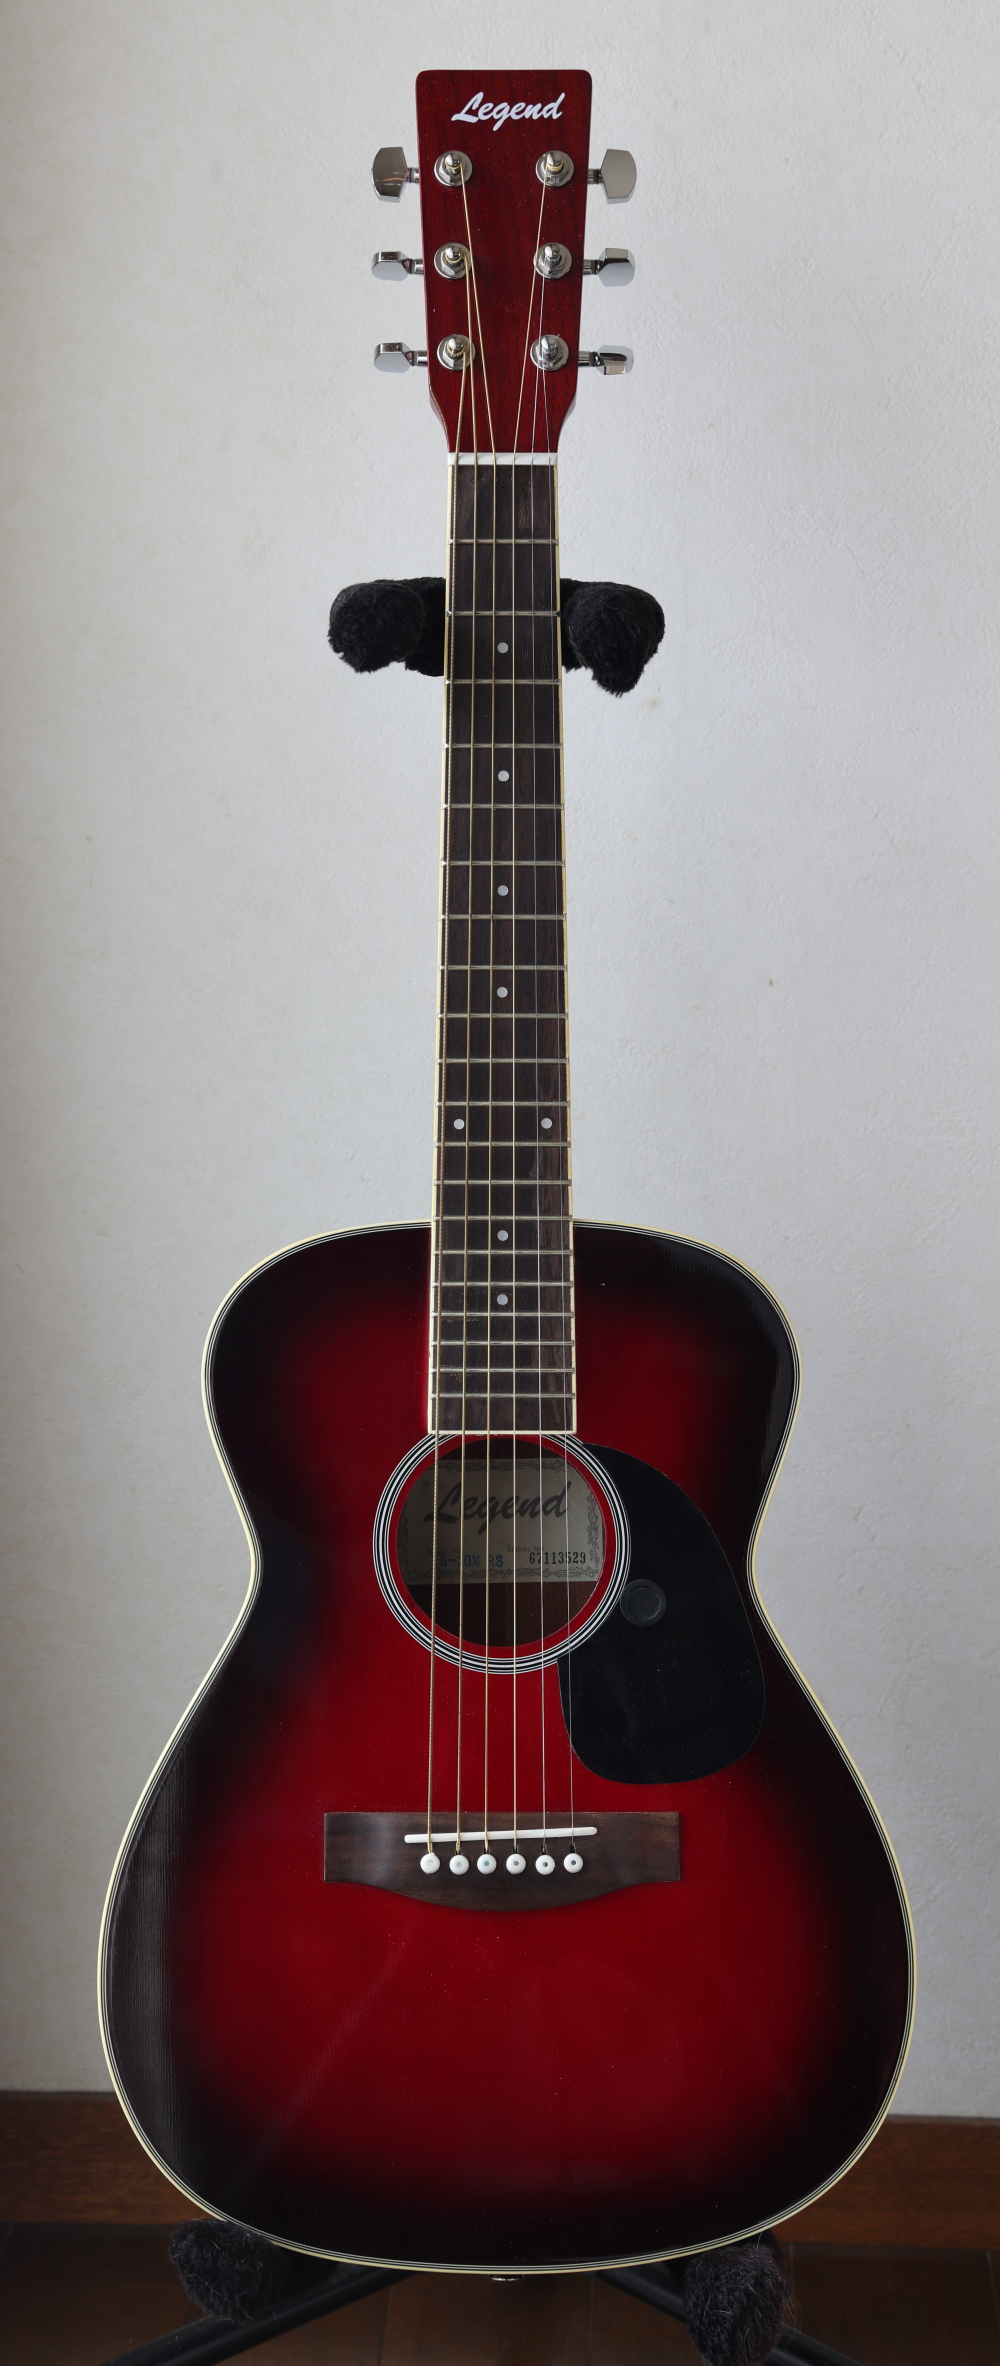 Legend アコースティックギター ミニギター FG-20 3/4RS